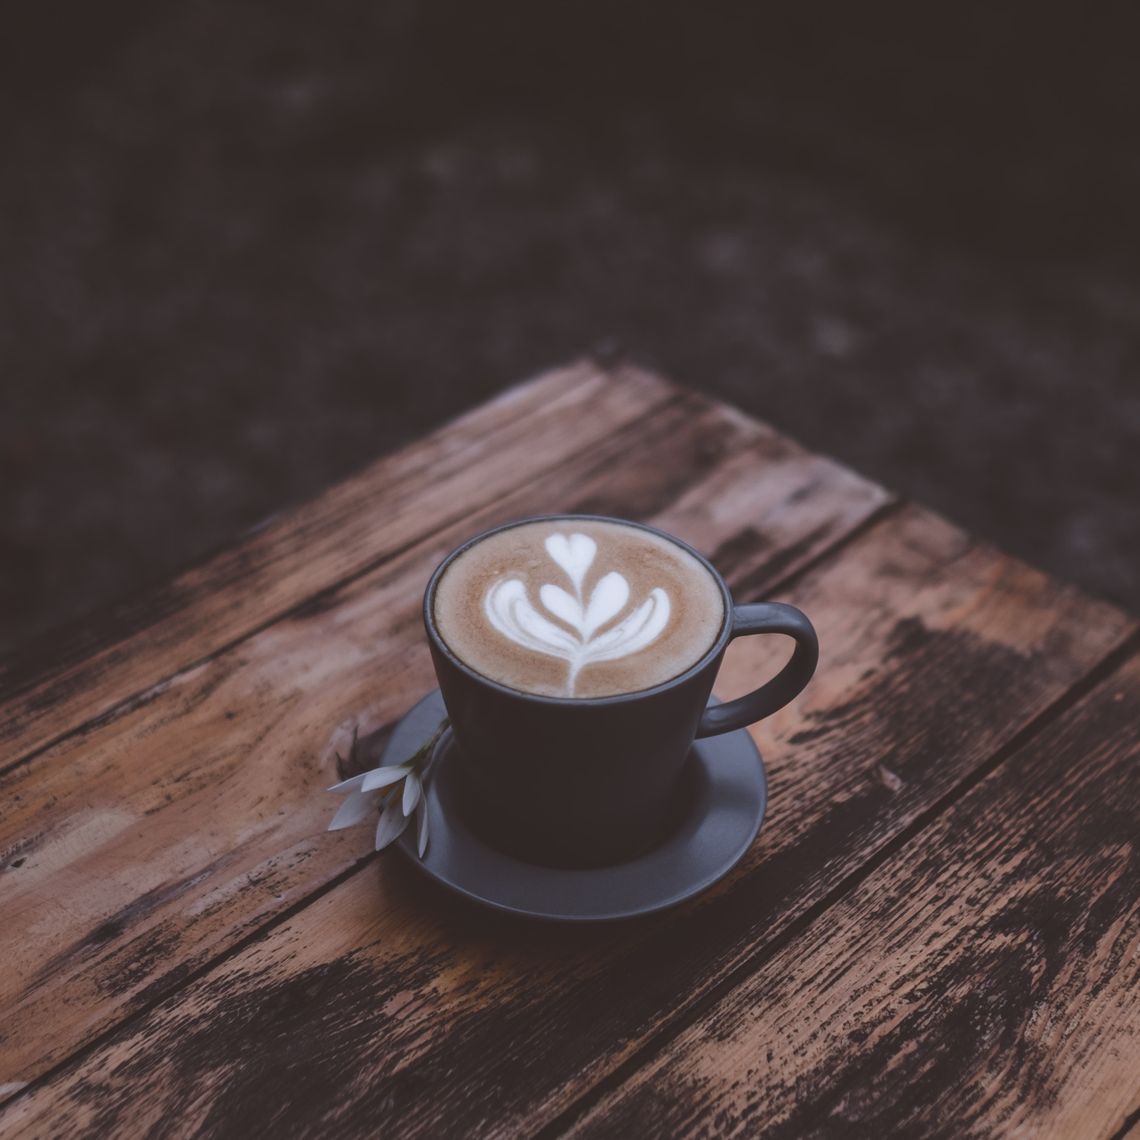 Obrazek - Latte art - jak powstają wzorki na kawie?